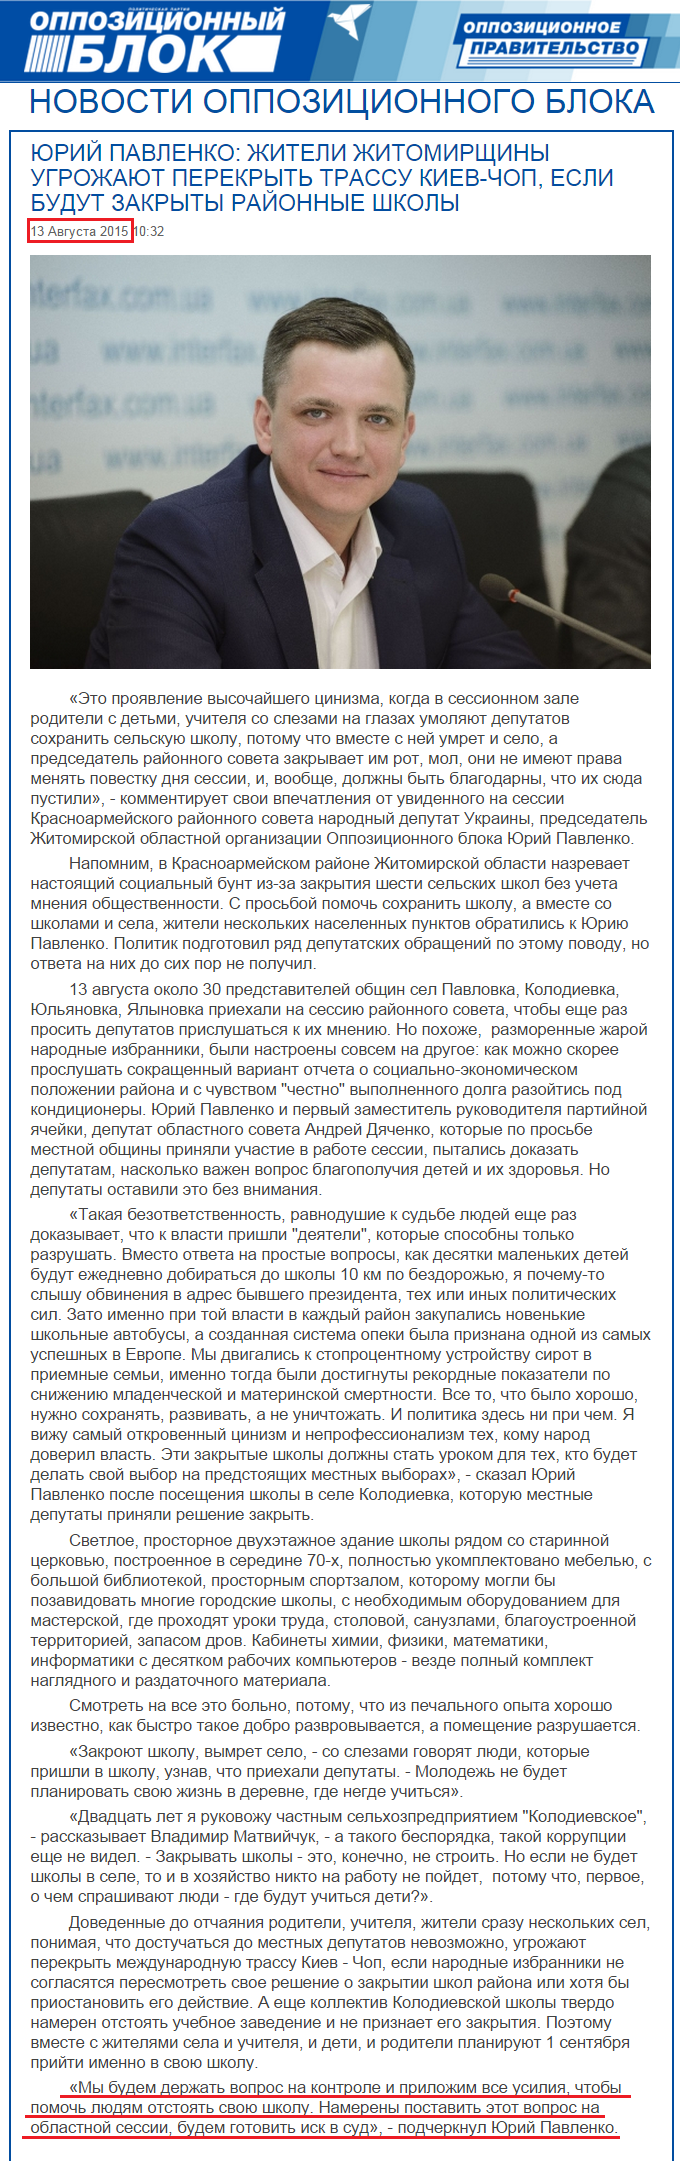 http://opposition.org.ua/news/yurij-pavlenko-zhiteli-zhitomirshhini-pogrozhuyut-perekriti-trasu-kiv-chop-yakshho-budut-zakriti-rajonni-shkoli.html